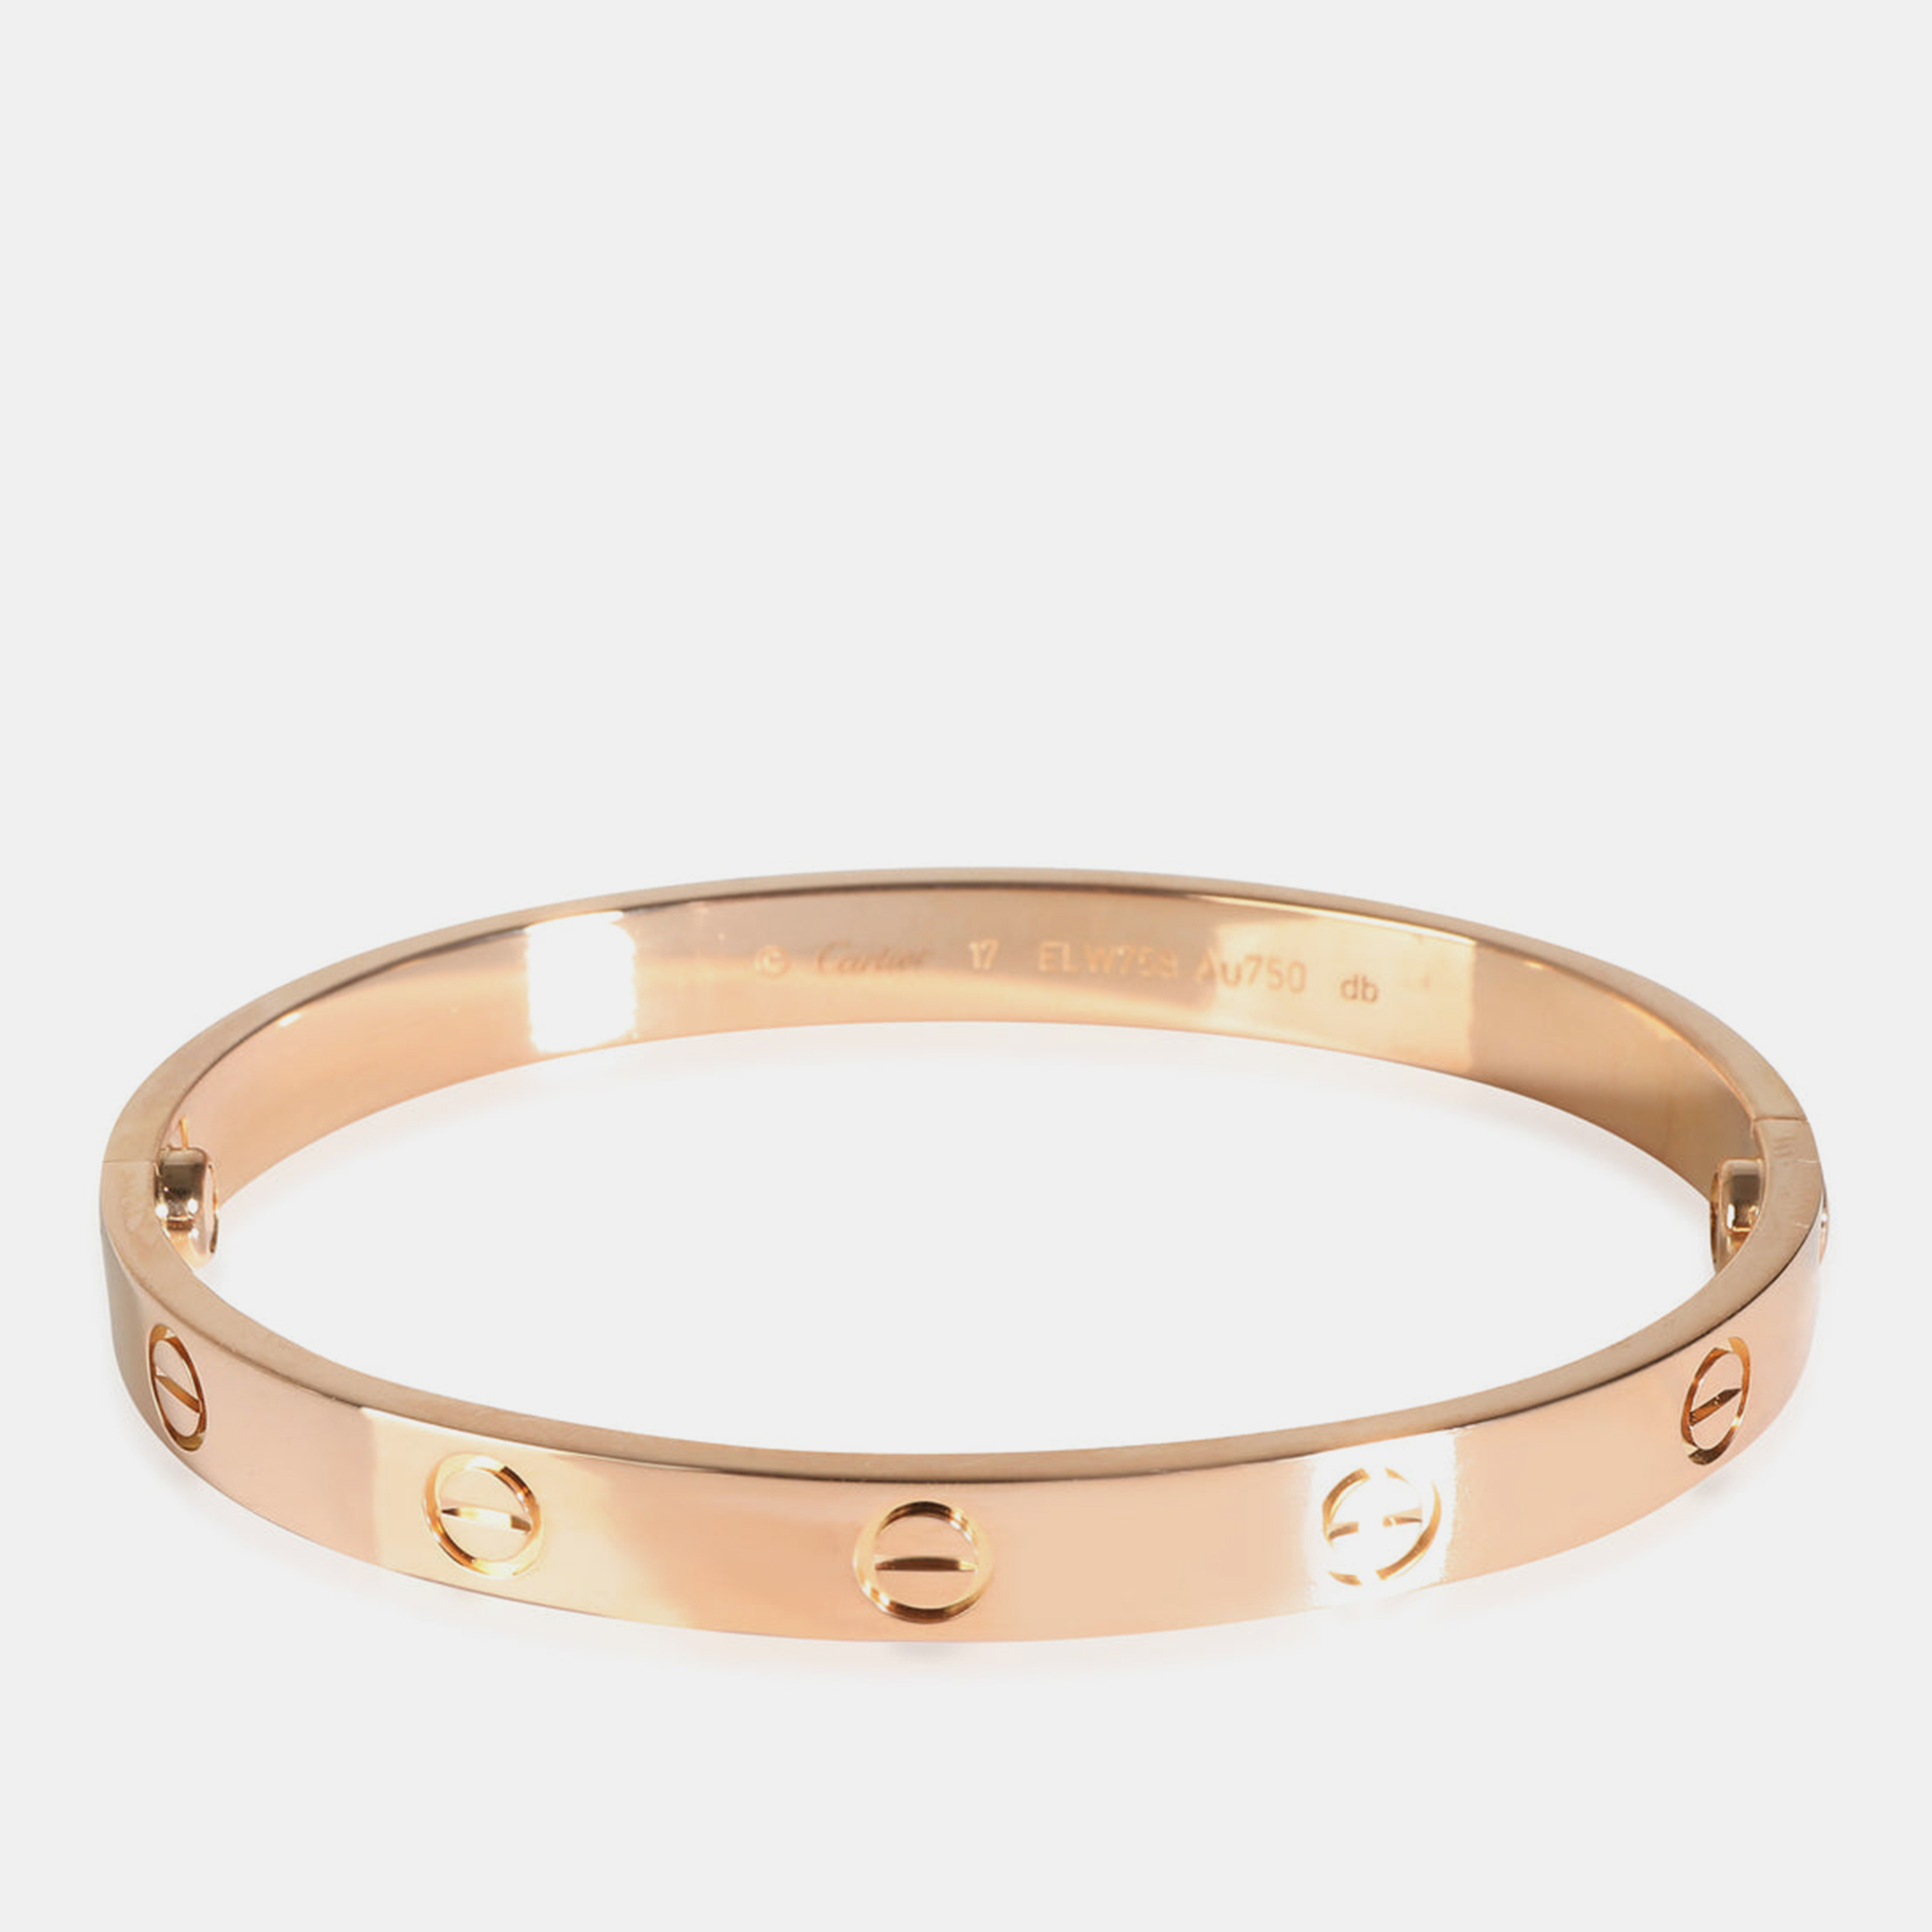 Cartier 18k rose gold love bracelet